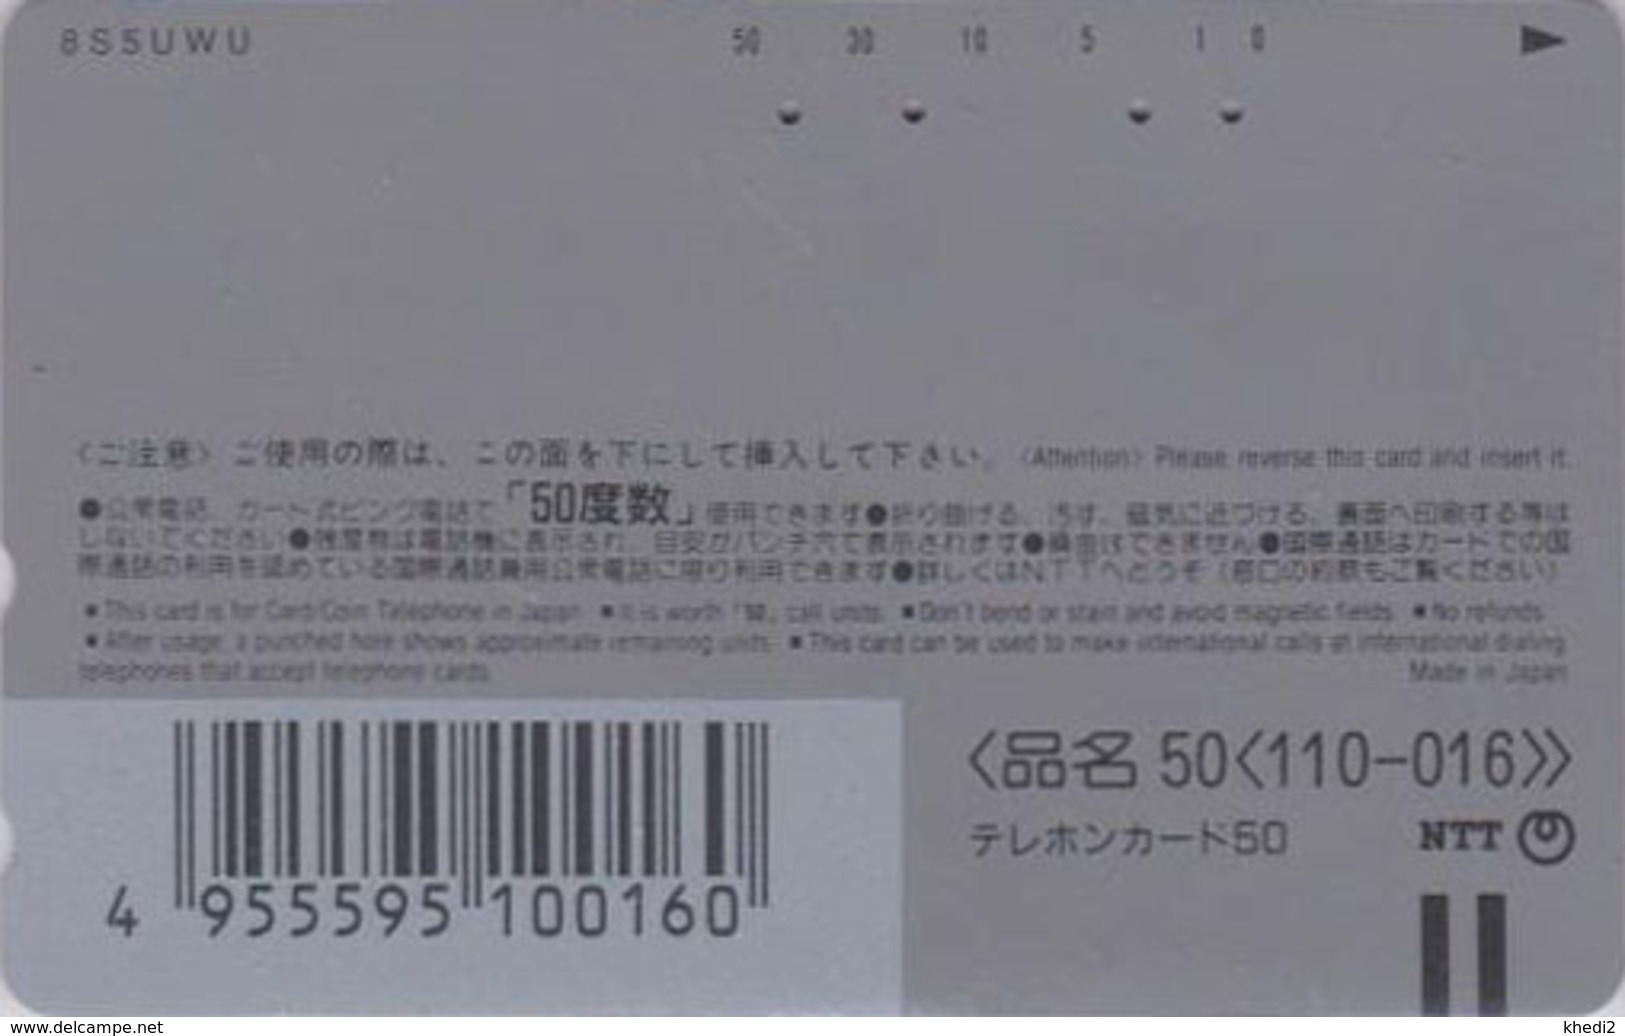 Télécarte  Japon / 110-016 - DISNEY ON ICE - TOY STORY ** Dinosaure Diinsaur Saurier ** - Japan Movie Phonecard - Disney